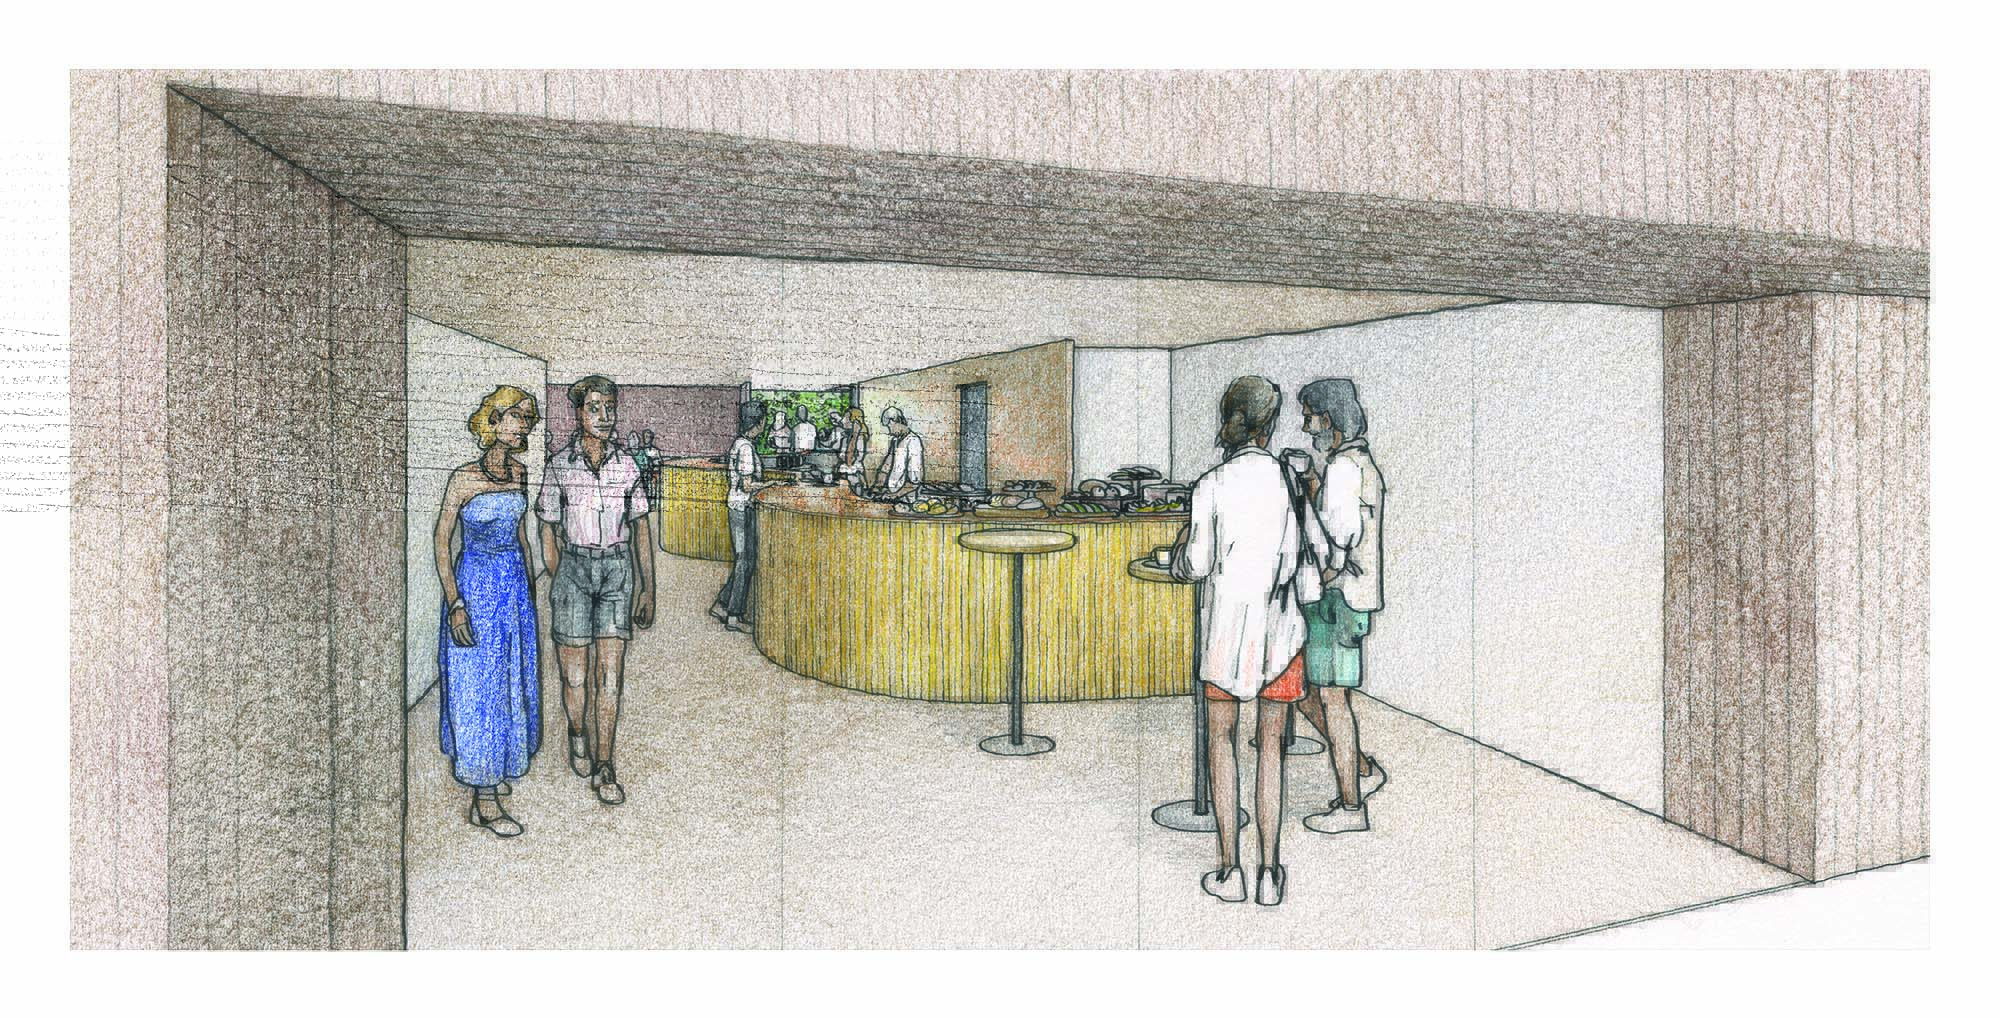 Imagem mostra representação em desenho de bar com pessoas ao redor. Os bancos e a fachada do bar são amarelos